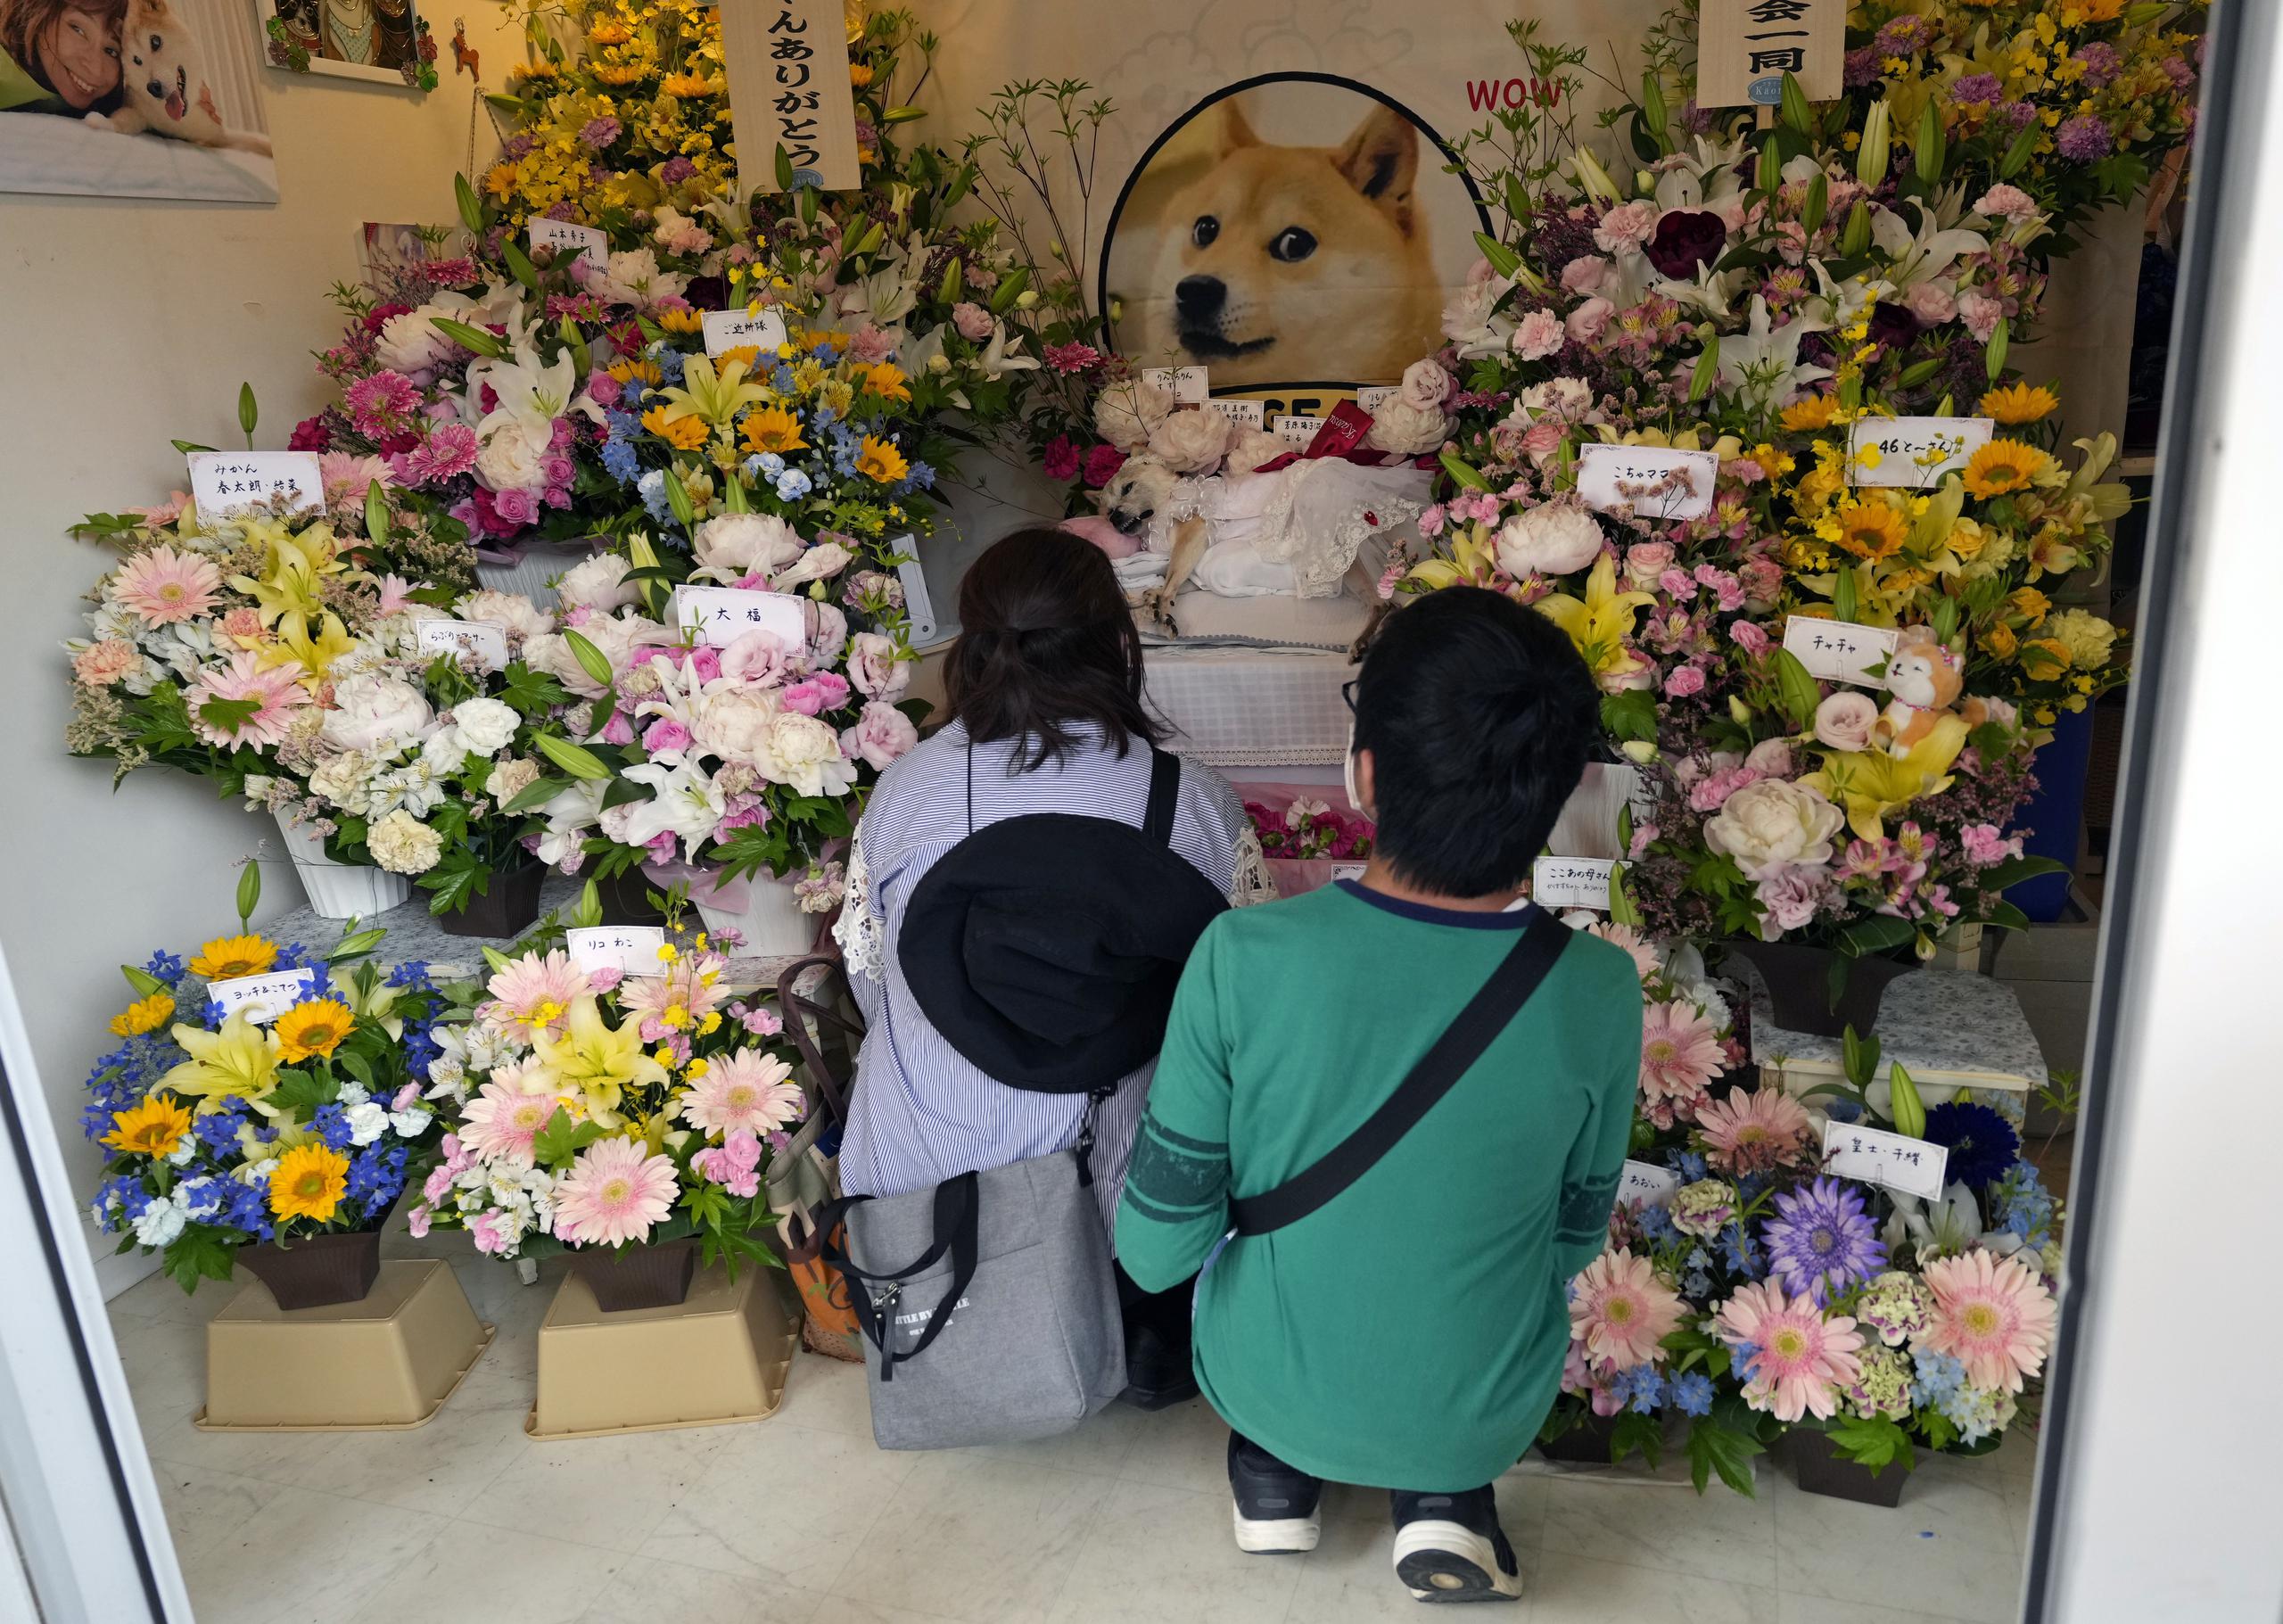 Decenas de personas se despiden con flores de Kabosu, la perra shiba inu que inspiró el meme Doge. EFE/EPA/FRANCK ROBICHON
